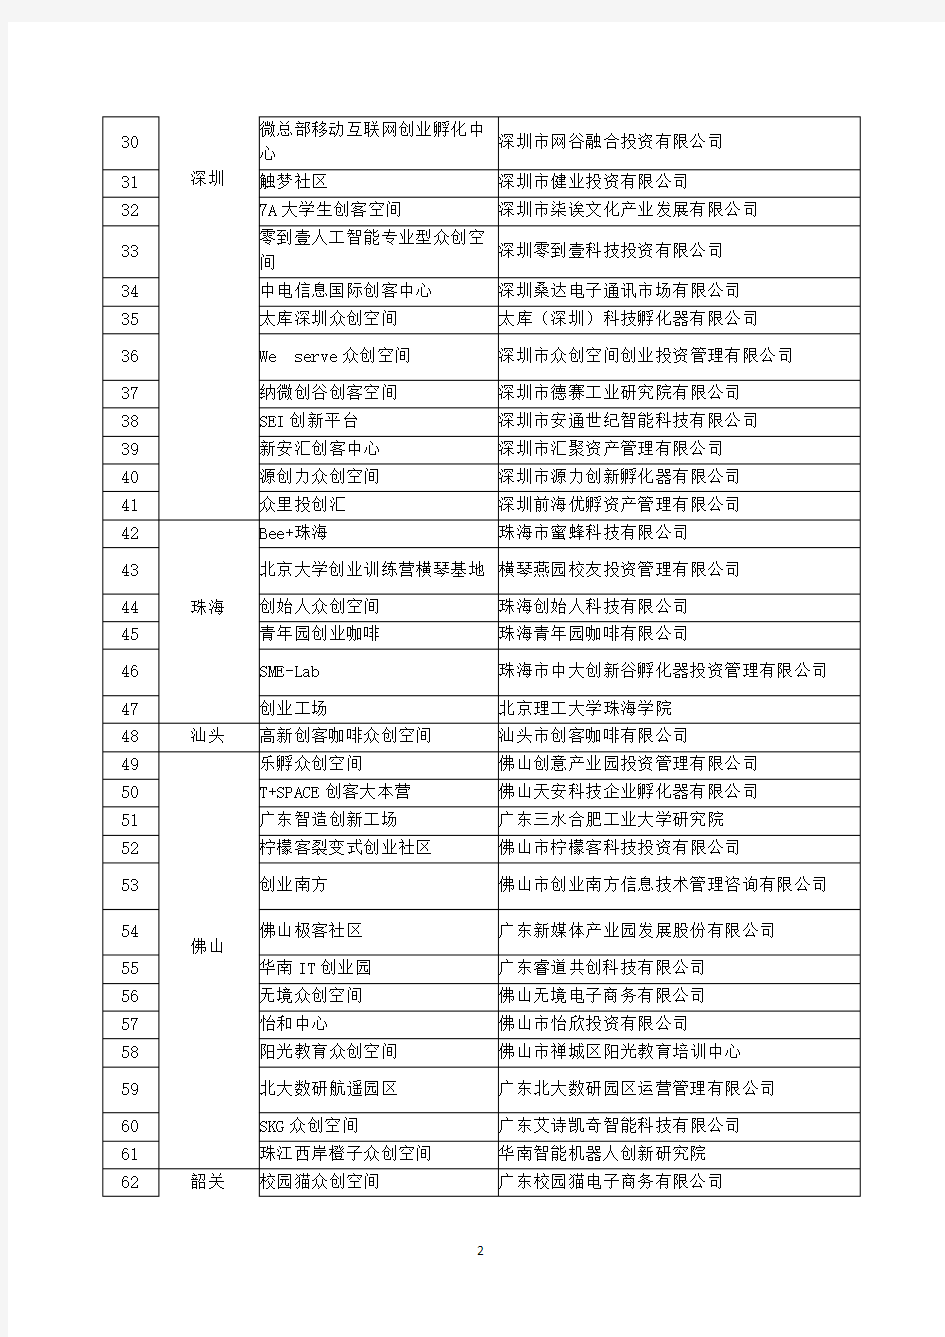 广东省2017年众创空间试点单位名单